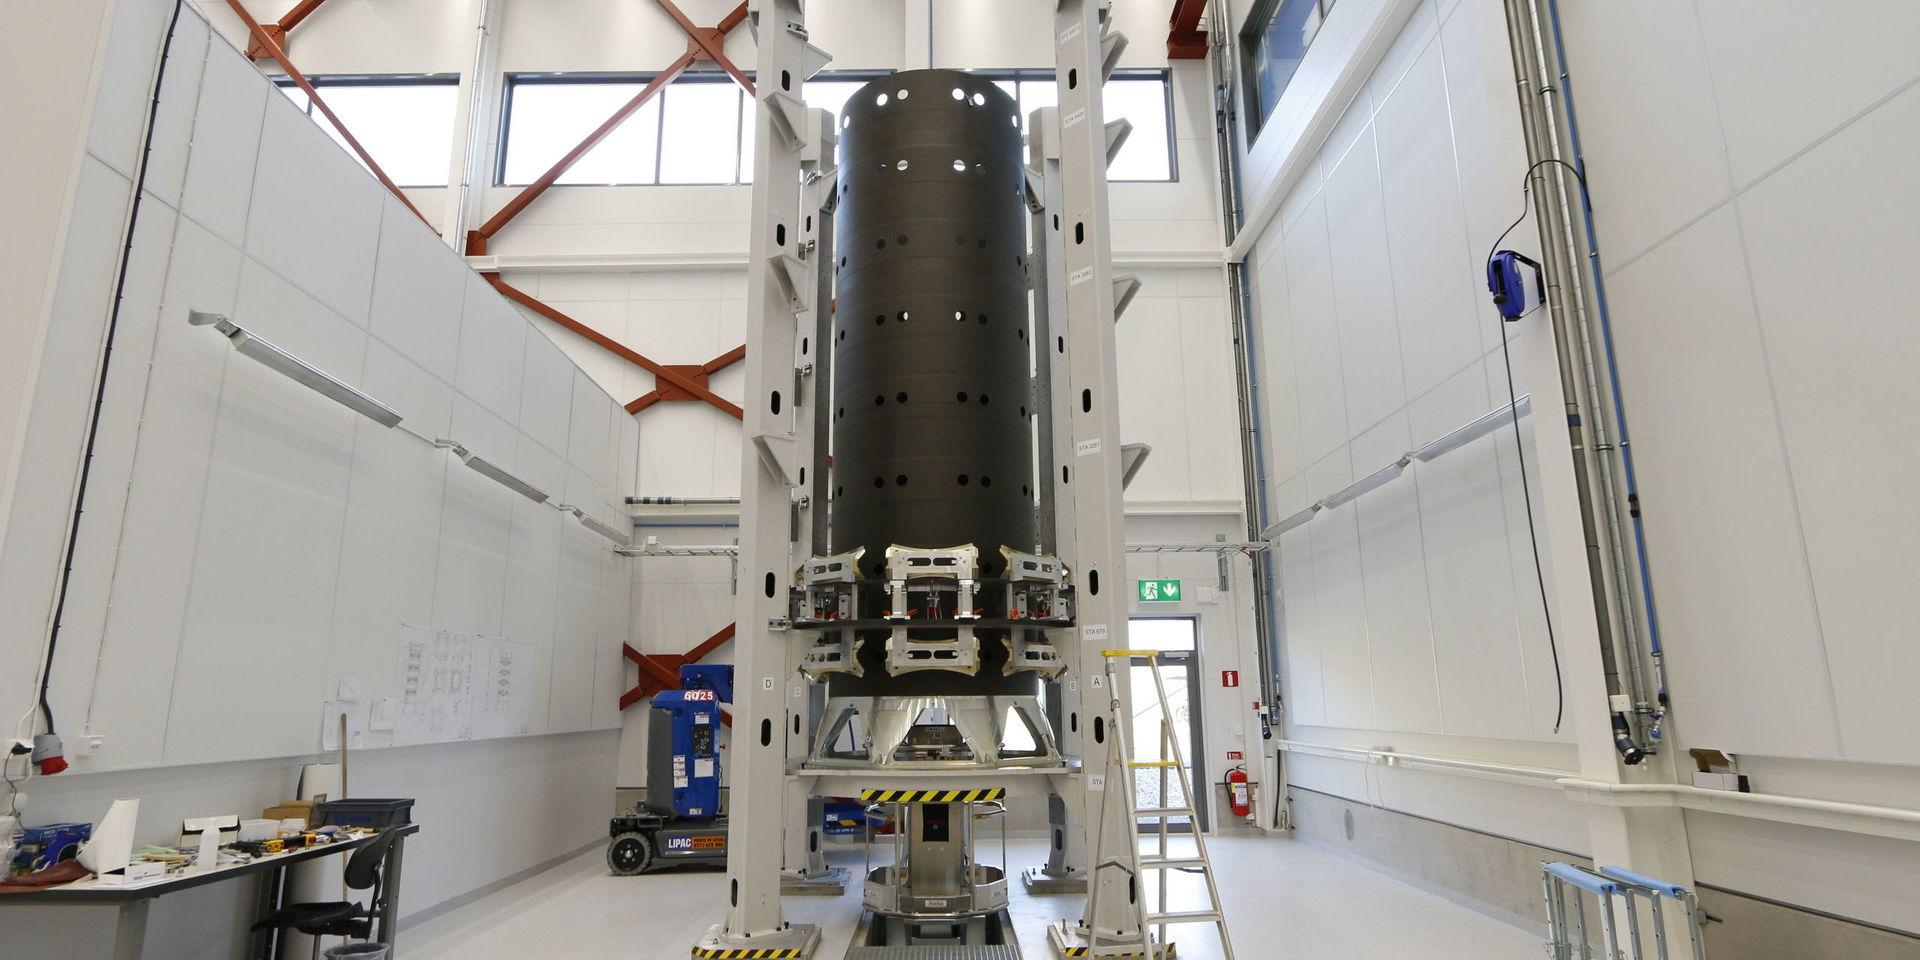 Varje raket kommer kunna lyfta med 32 satelliter tack vare Ruag Space nyutvecklade fastsättningsanordning och multiseparationssystem, även kallat dispenser. 